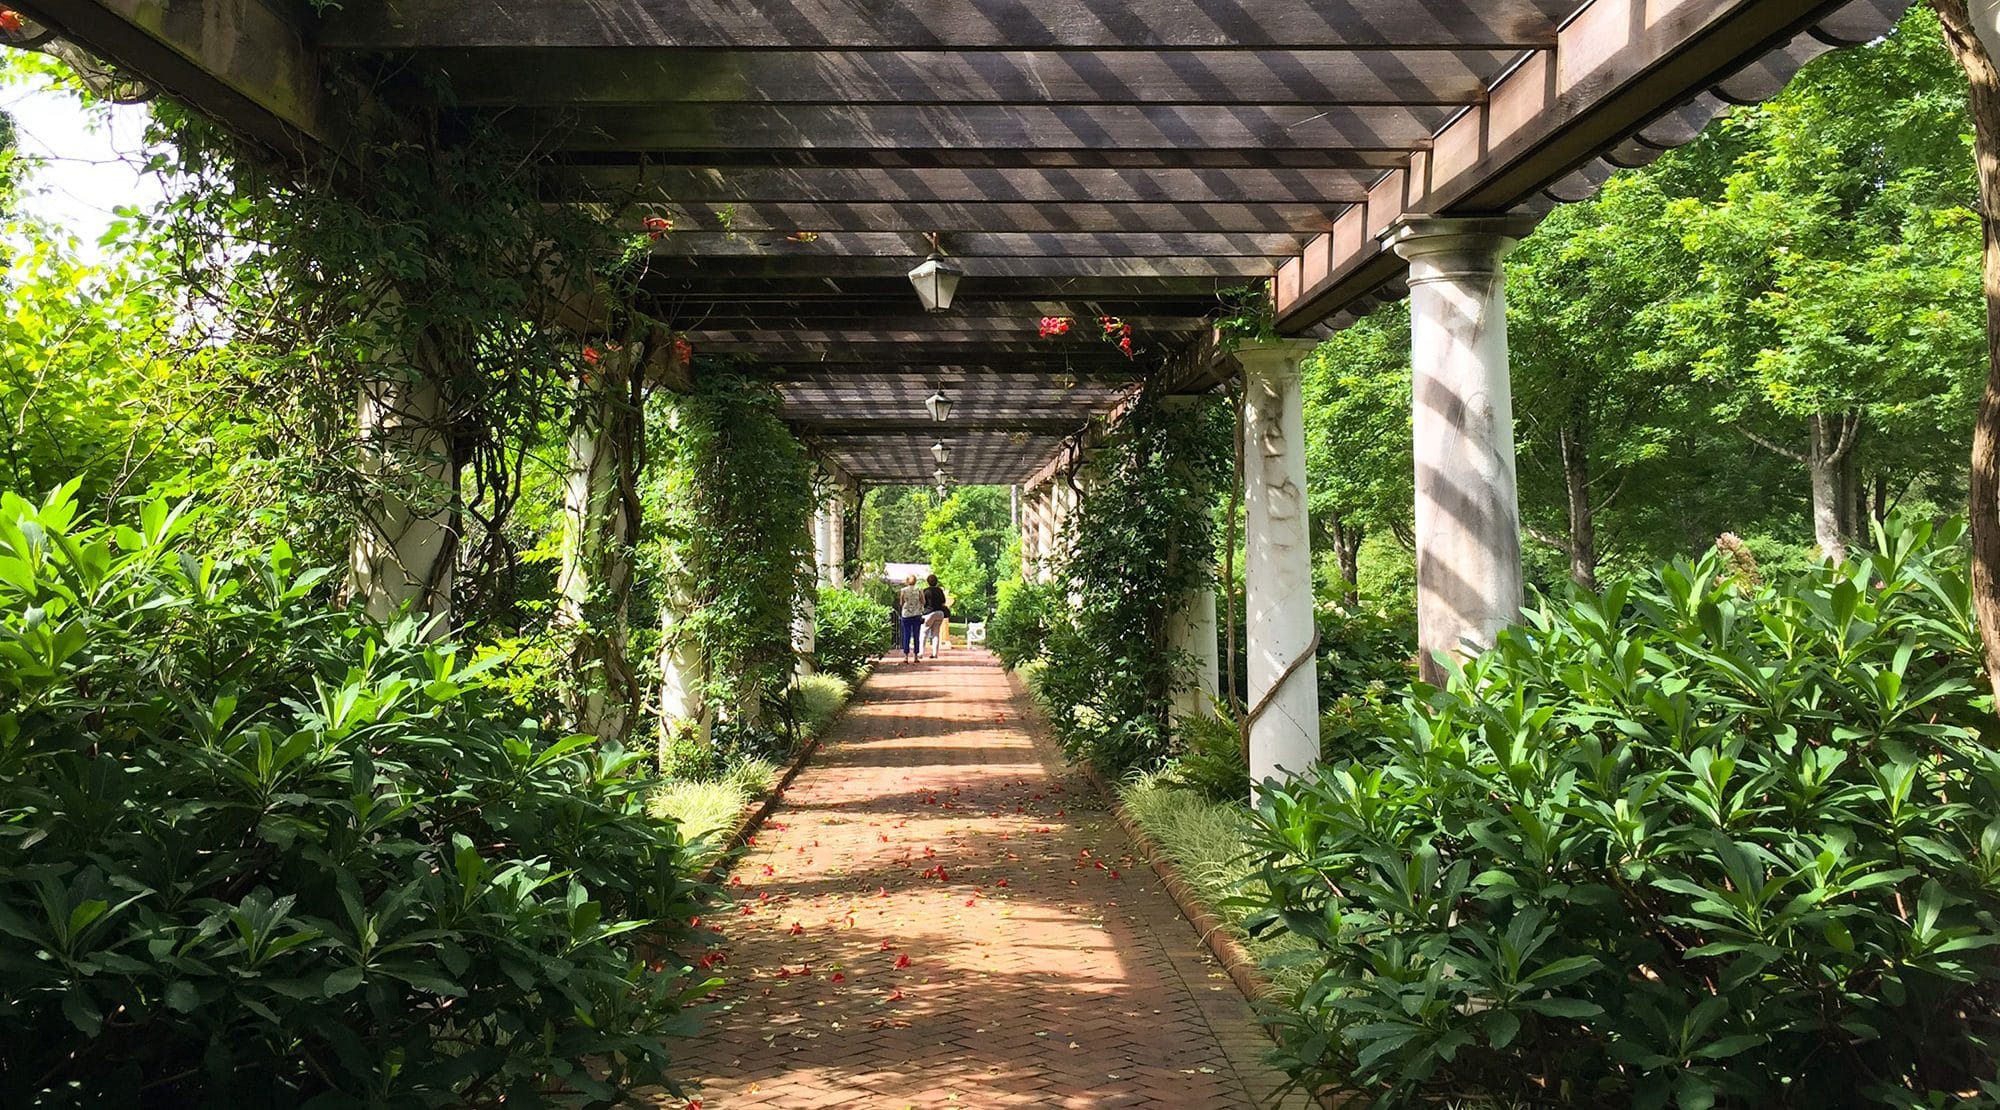 Visit Daniel Stowe Botanical Garden